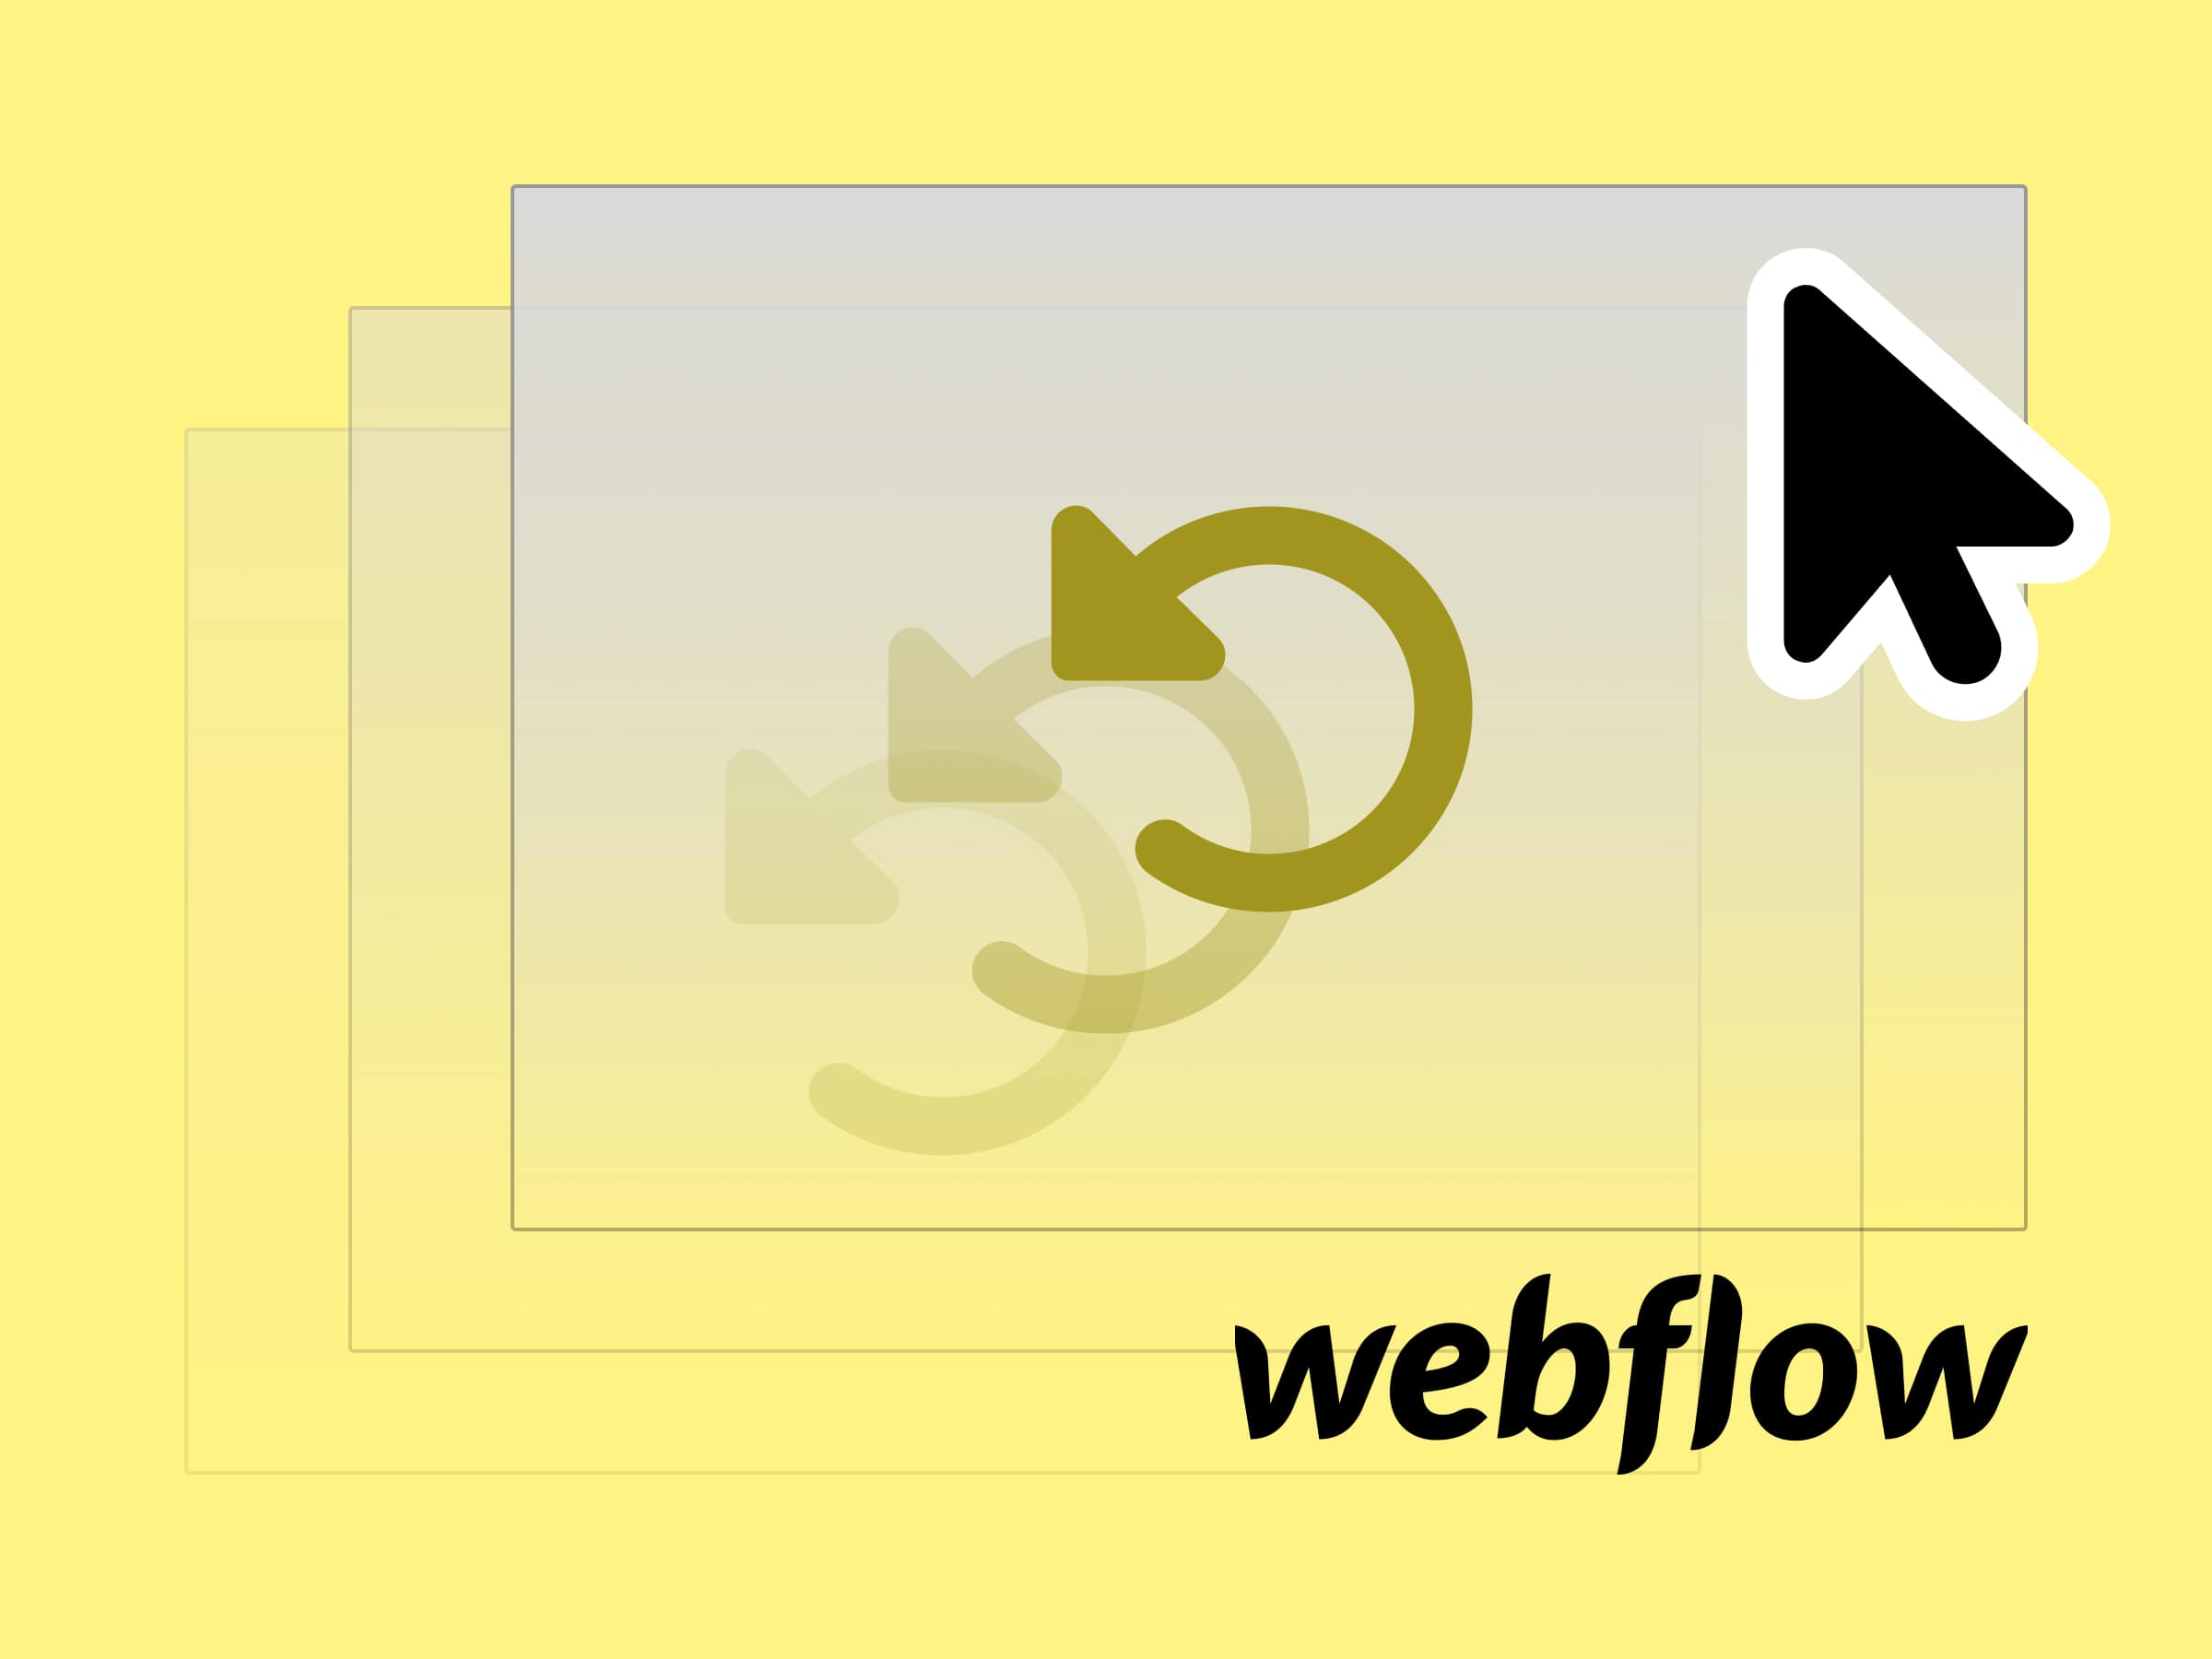 Wie man einzelne Webflow Seiten wieder aus der Veröffentlichung entfernt (un-publish)